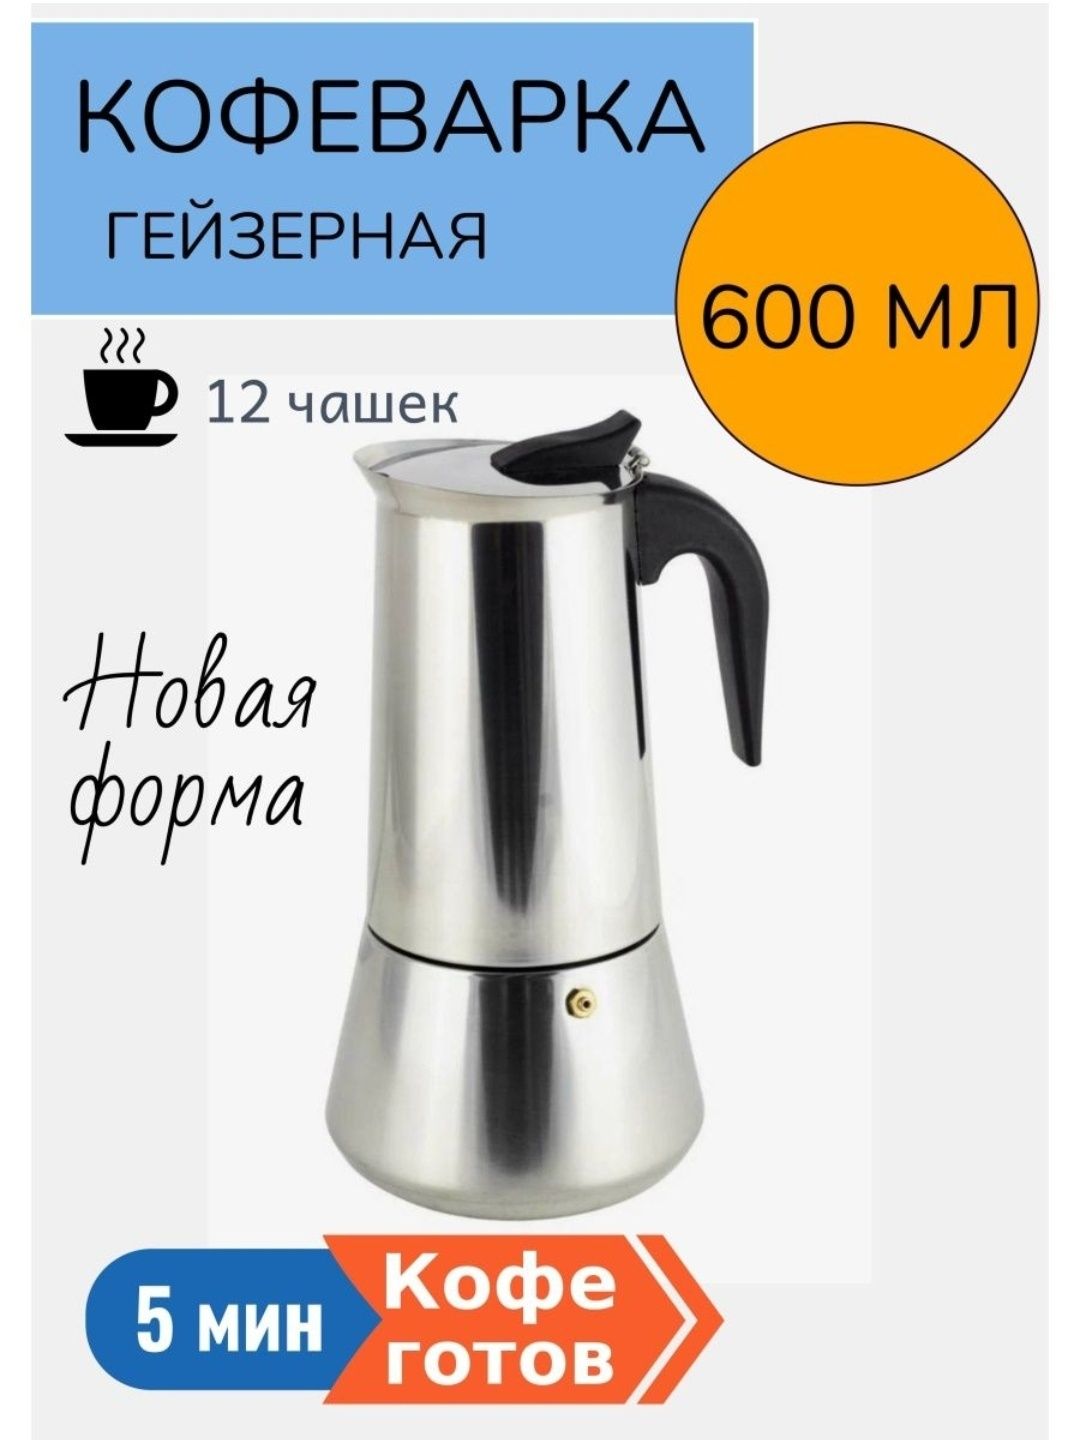 Новая гейзерная кофеварка 600 мл, 12 чашек, нержавейка.